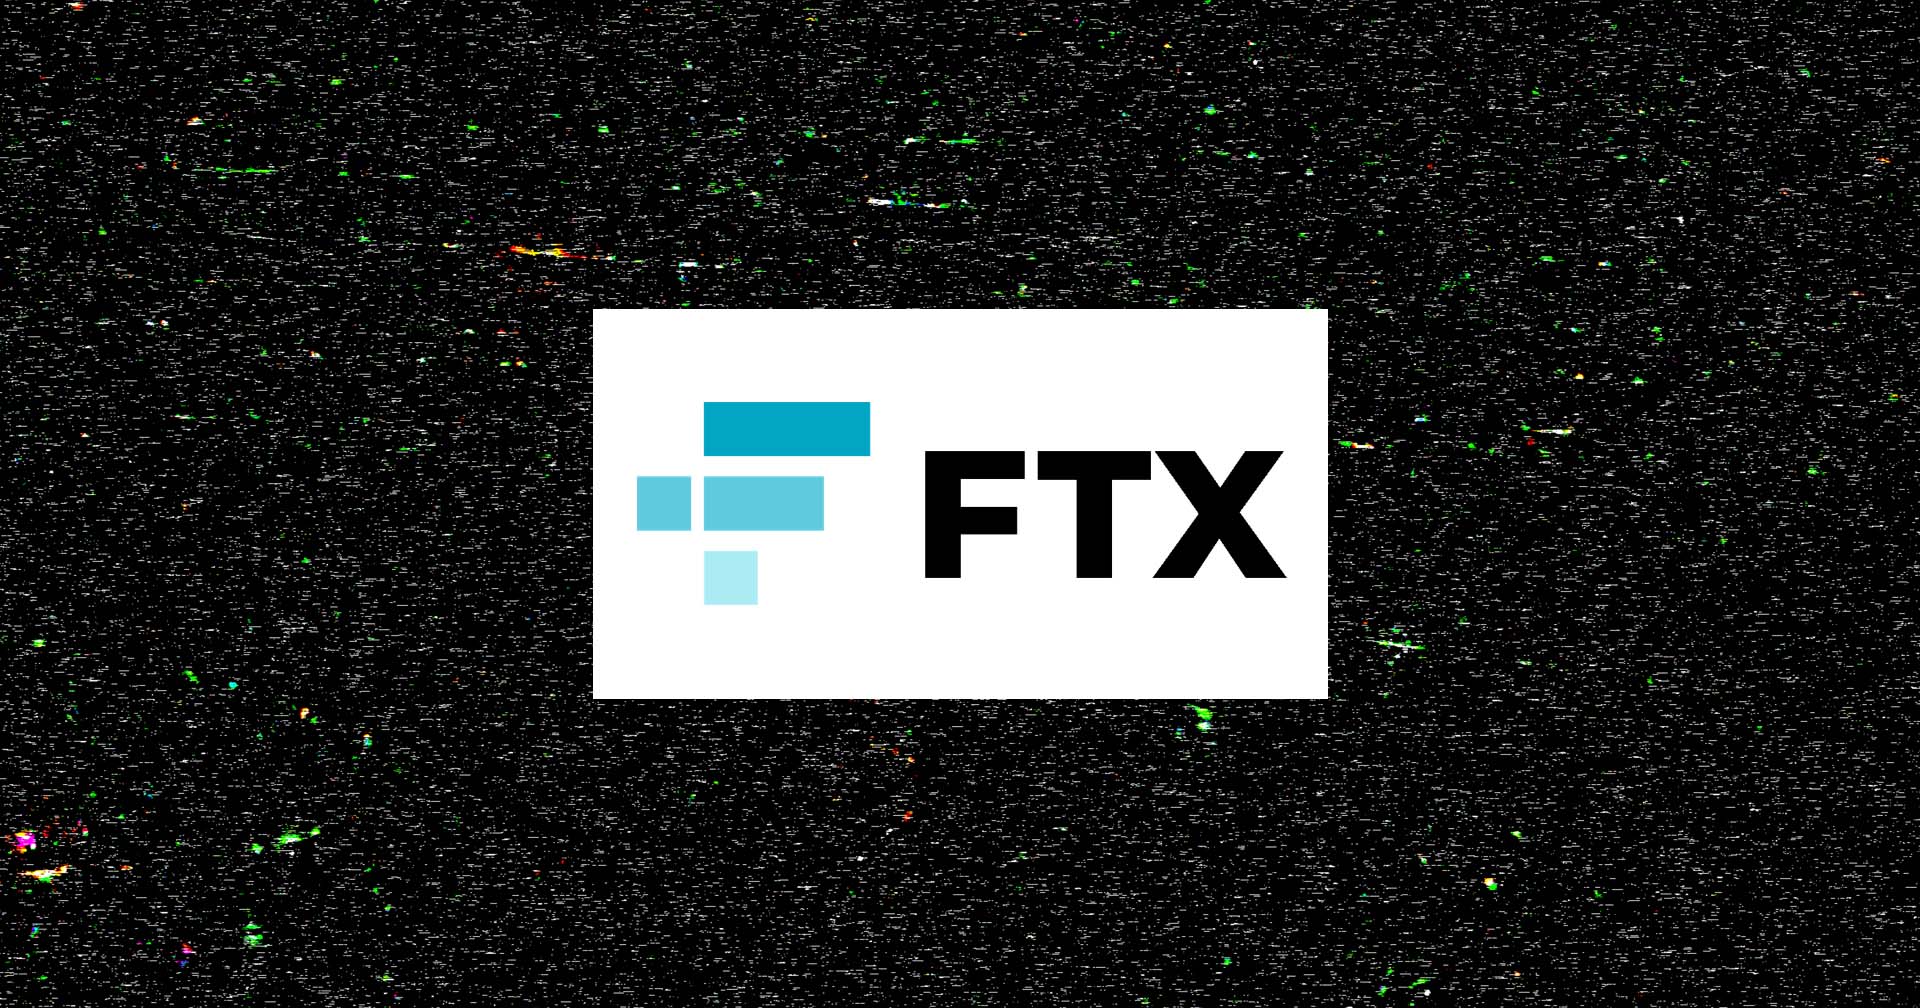 ไฟล์ภาพ NFT หาย! หลัง FTX ยื่นล้มละลาย วิศวกรเผย NFT ยังอยู่ แค่ไม่แสดงผล